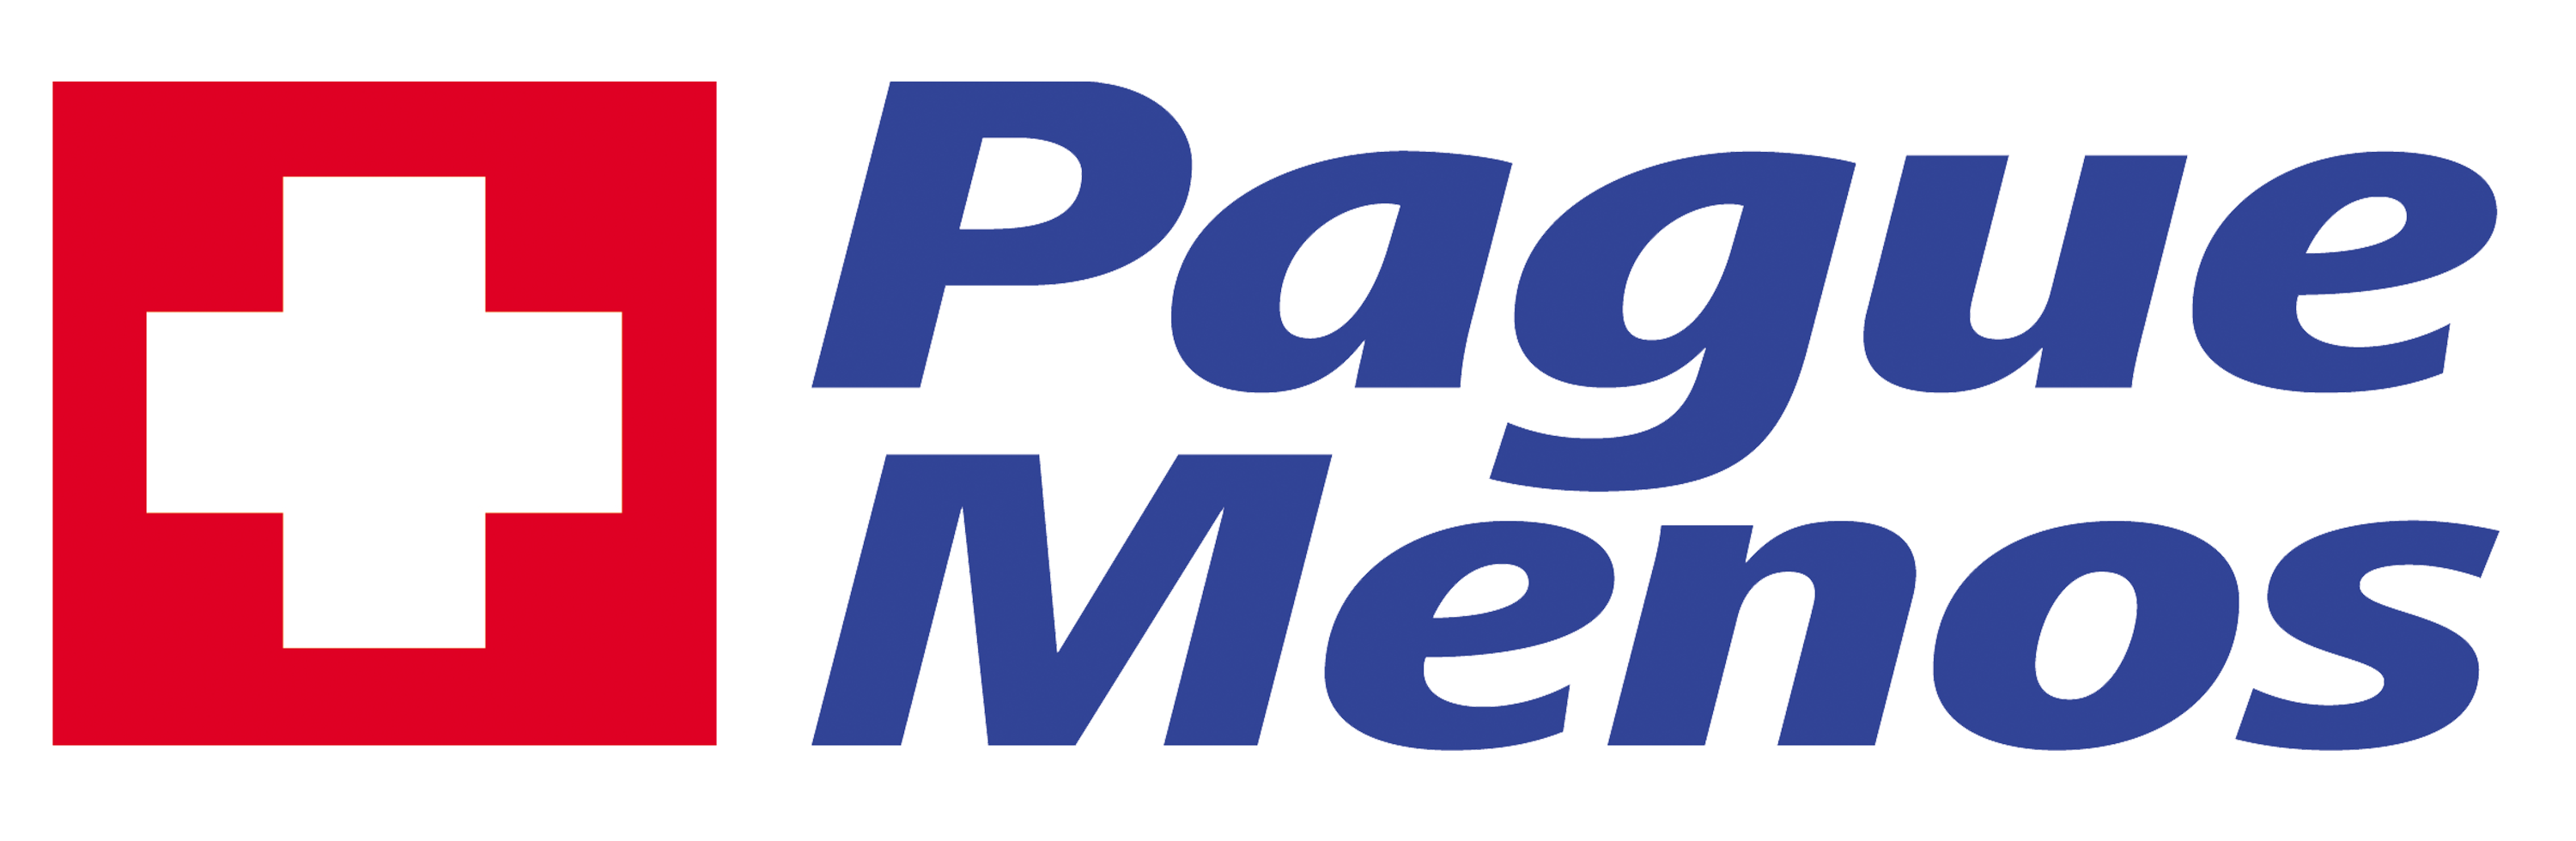 Farmacia Pague Menos - Benfica - MG